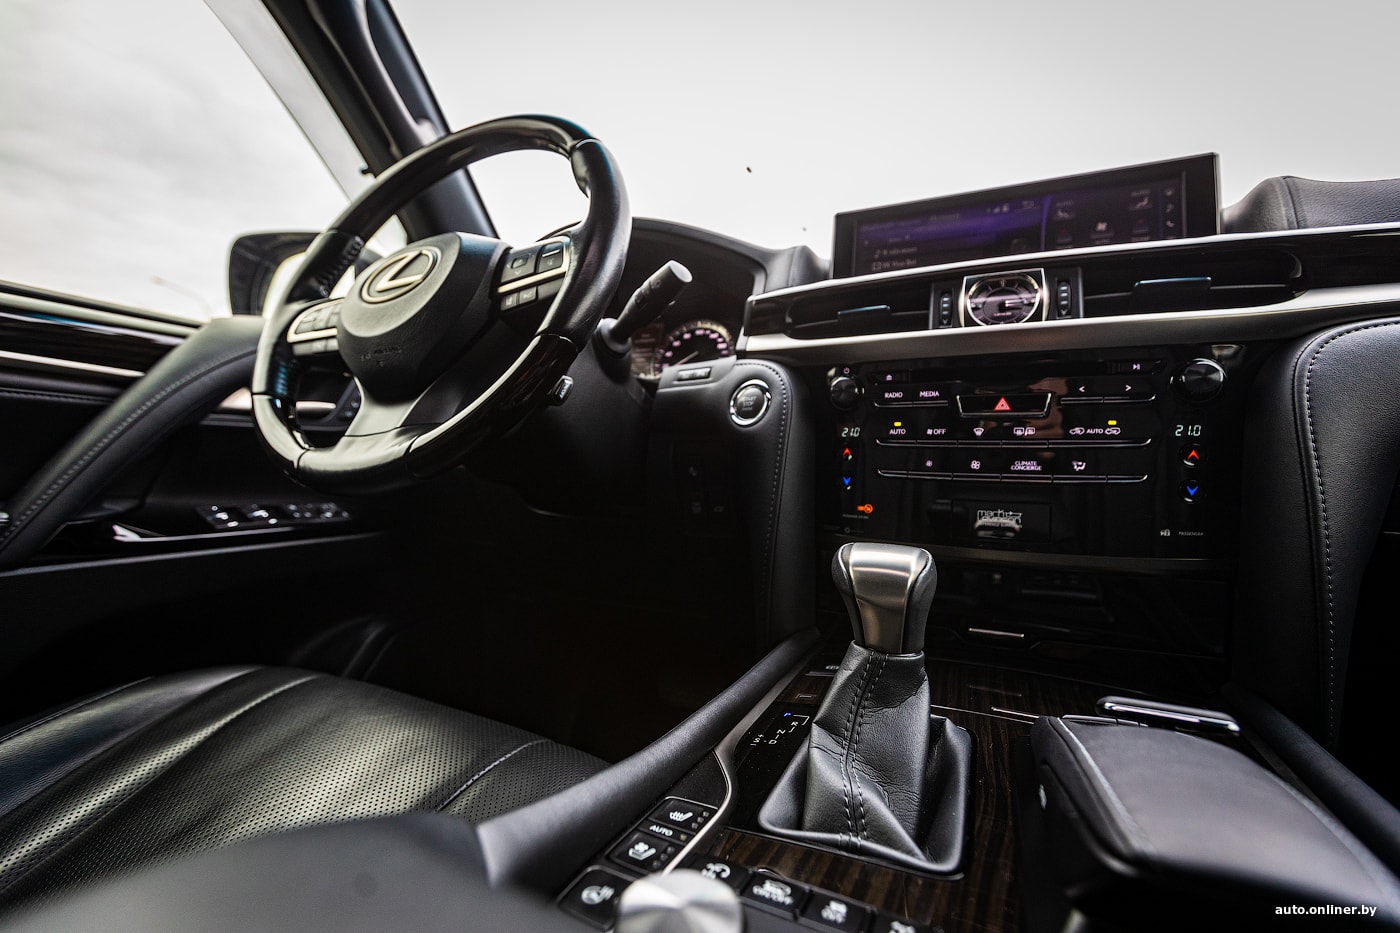 Семейный бизнес-класс: обзор Lexus LX 570